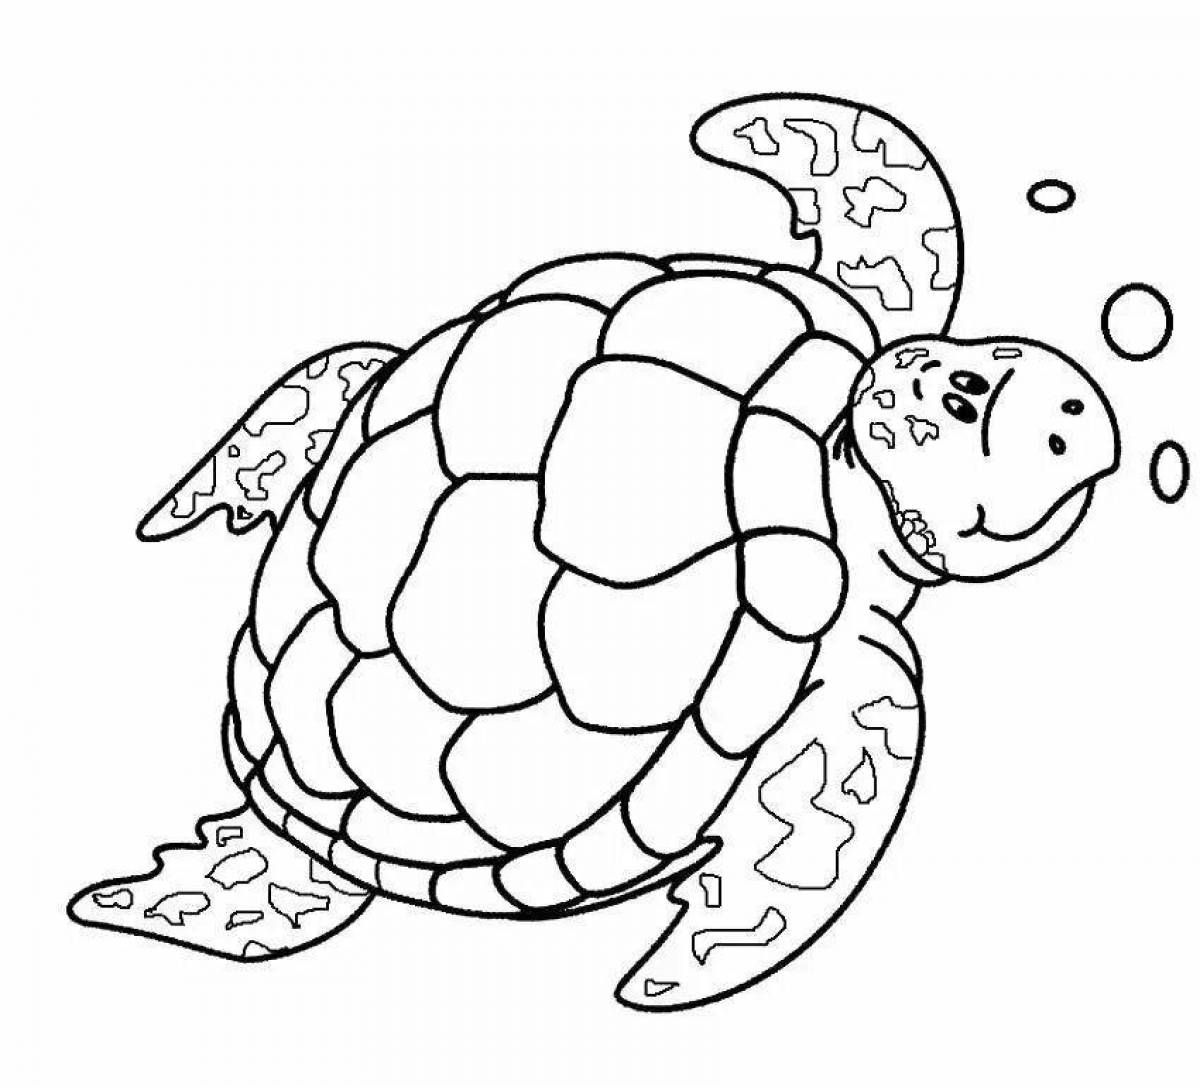 Веселая черепаха раскраска для детей